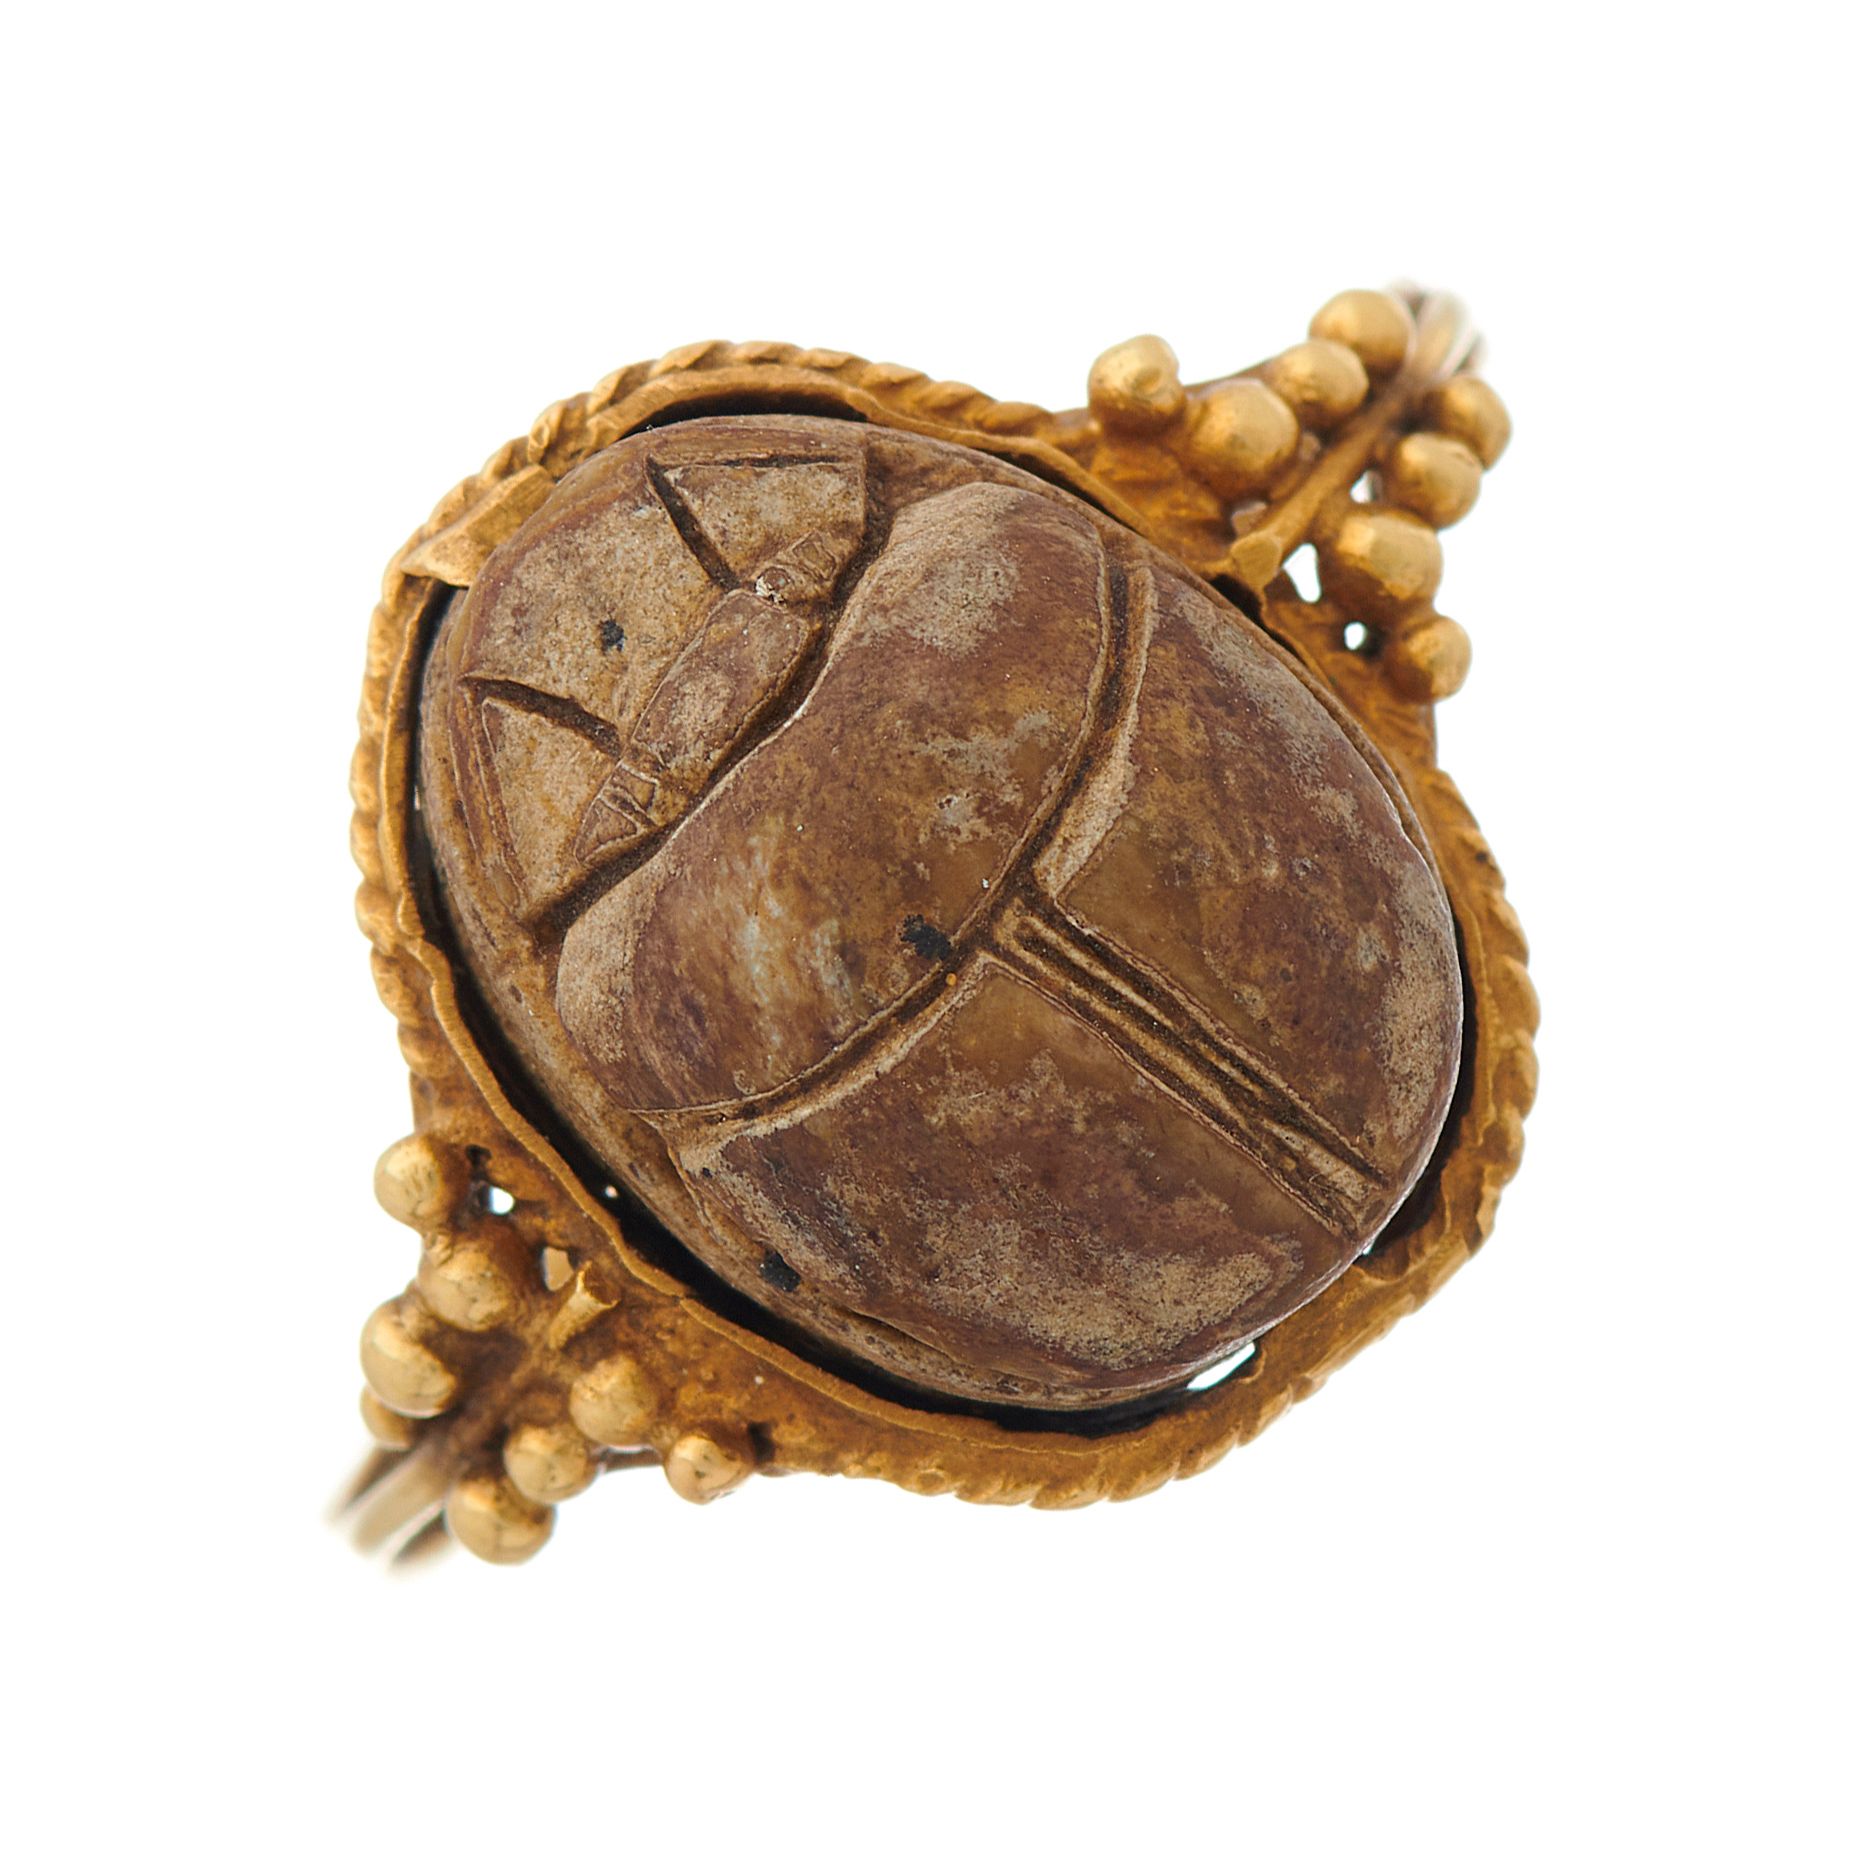 Null 一枚古埃及复兴时期的黄金辉石甲虫戒指，肩部有珠子装饰，戒指尺寸为Q，重2.8克 - 总体状况良好-表面磨损和划痕与年代相符-辉石甲虫状况良好，有一些擦&hellip;